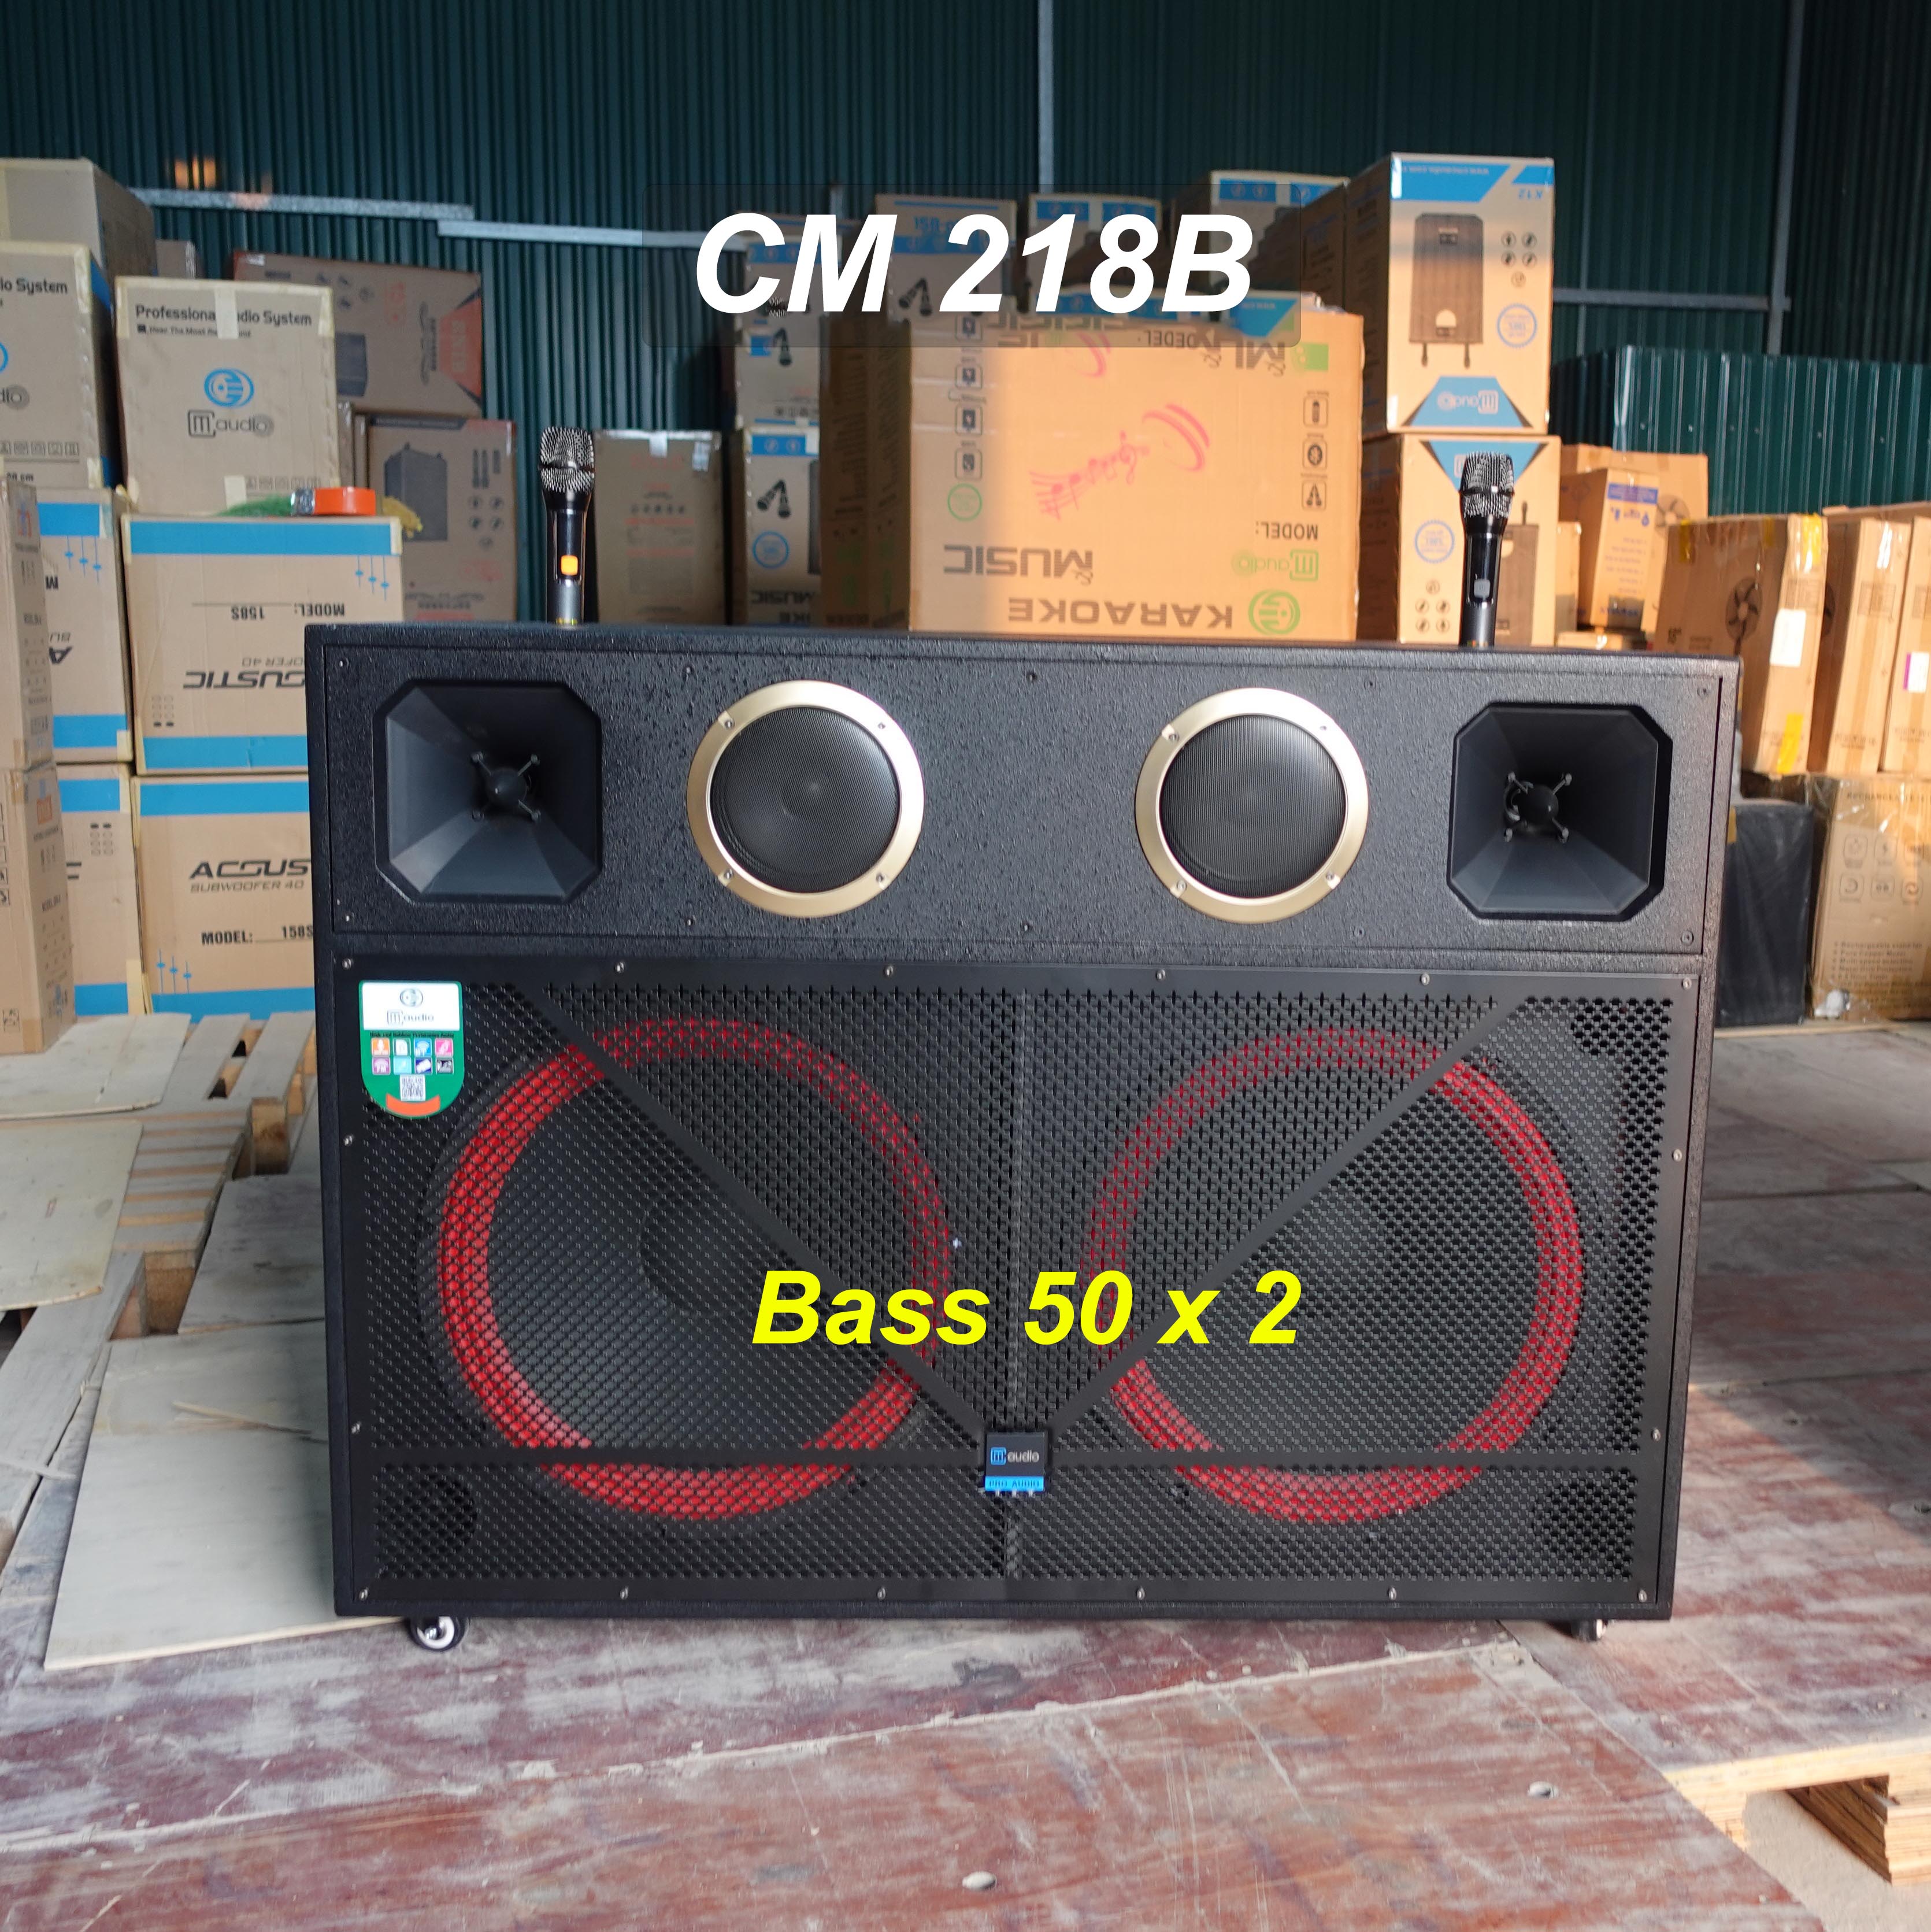 Loa Tủ Công Suất Lớn 2 Bass 50 CM 218B kèm Cặp Mic UHF Chất, Công suất 1200 X 2